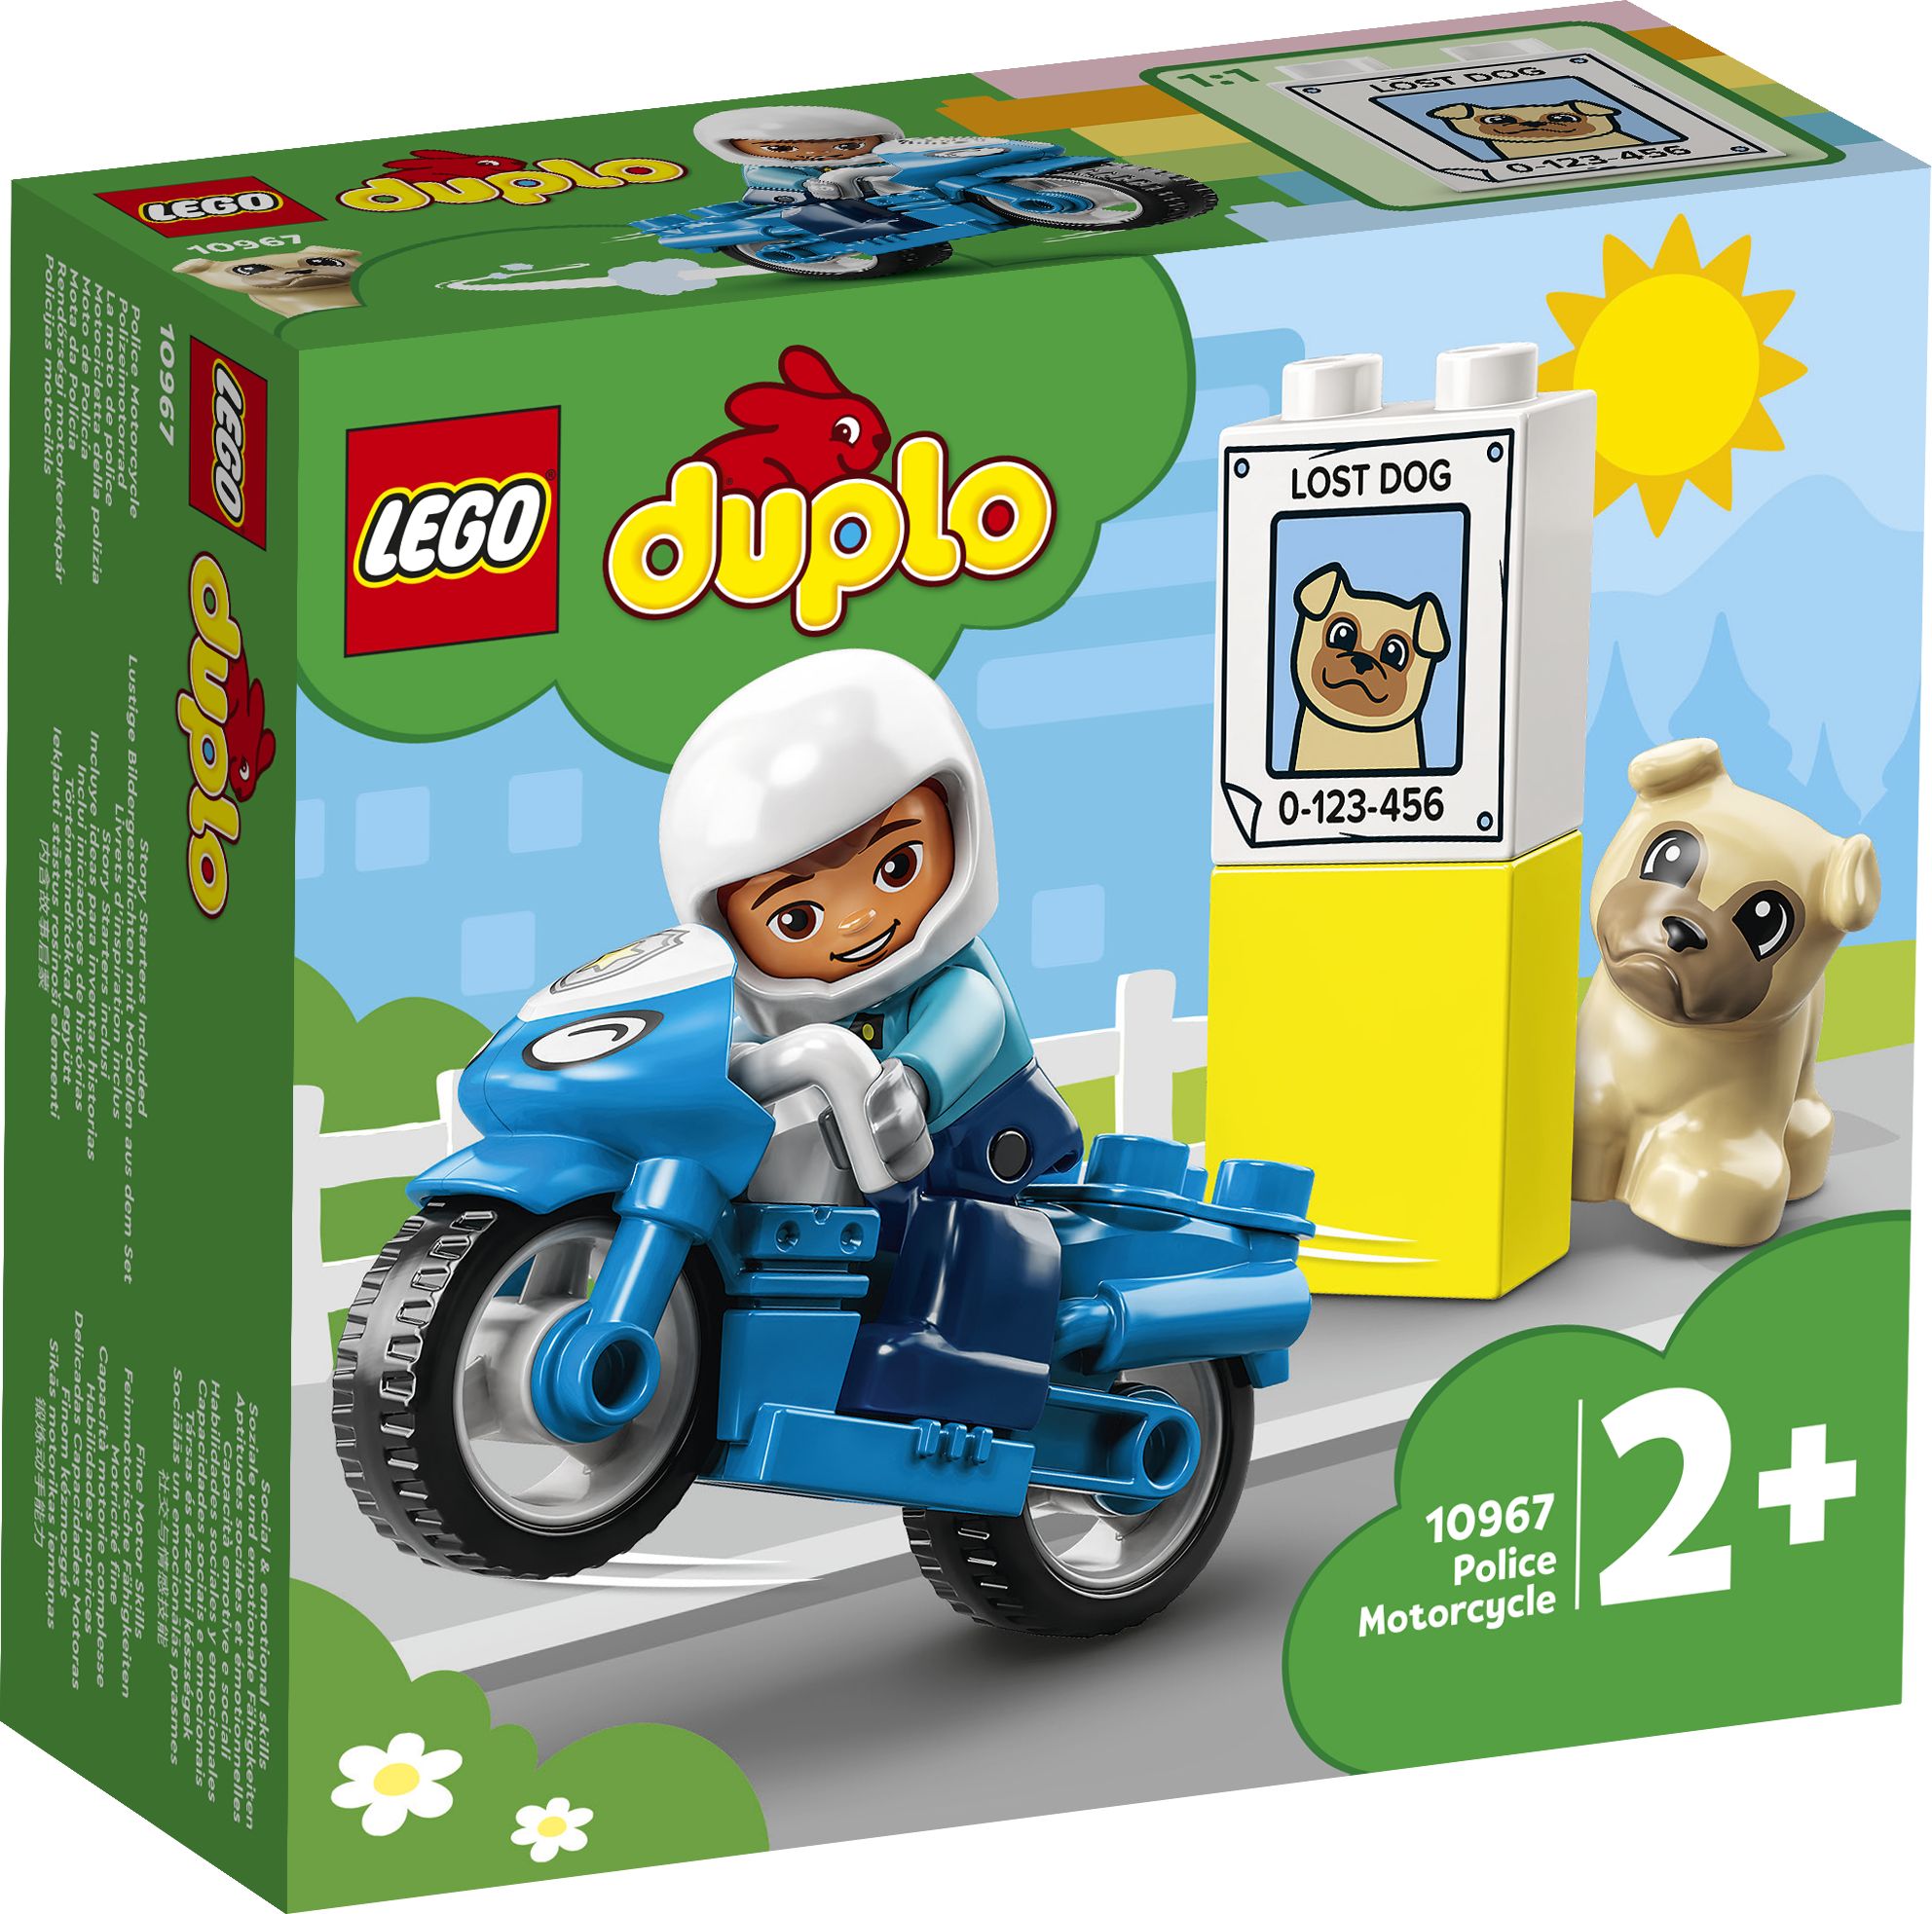 LEGO Duplo 10967 Polizeimotorrad LEGO_10967_Box1_v29.jpg